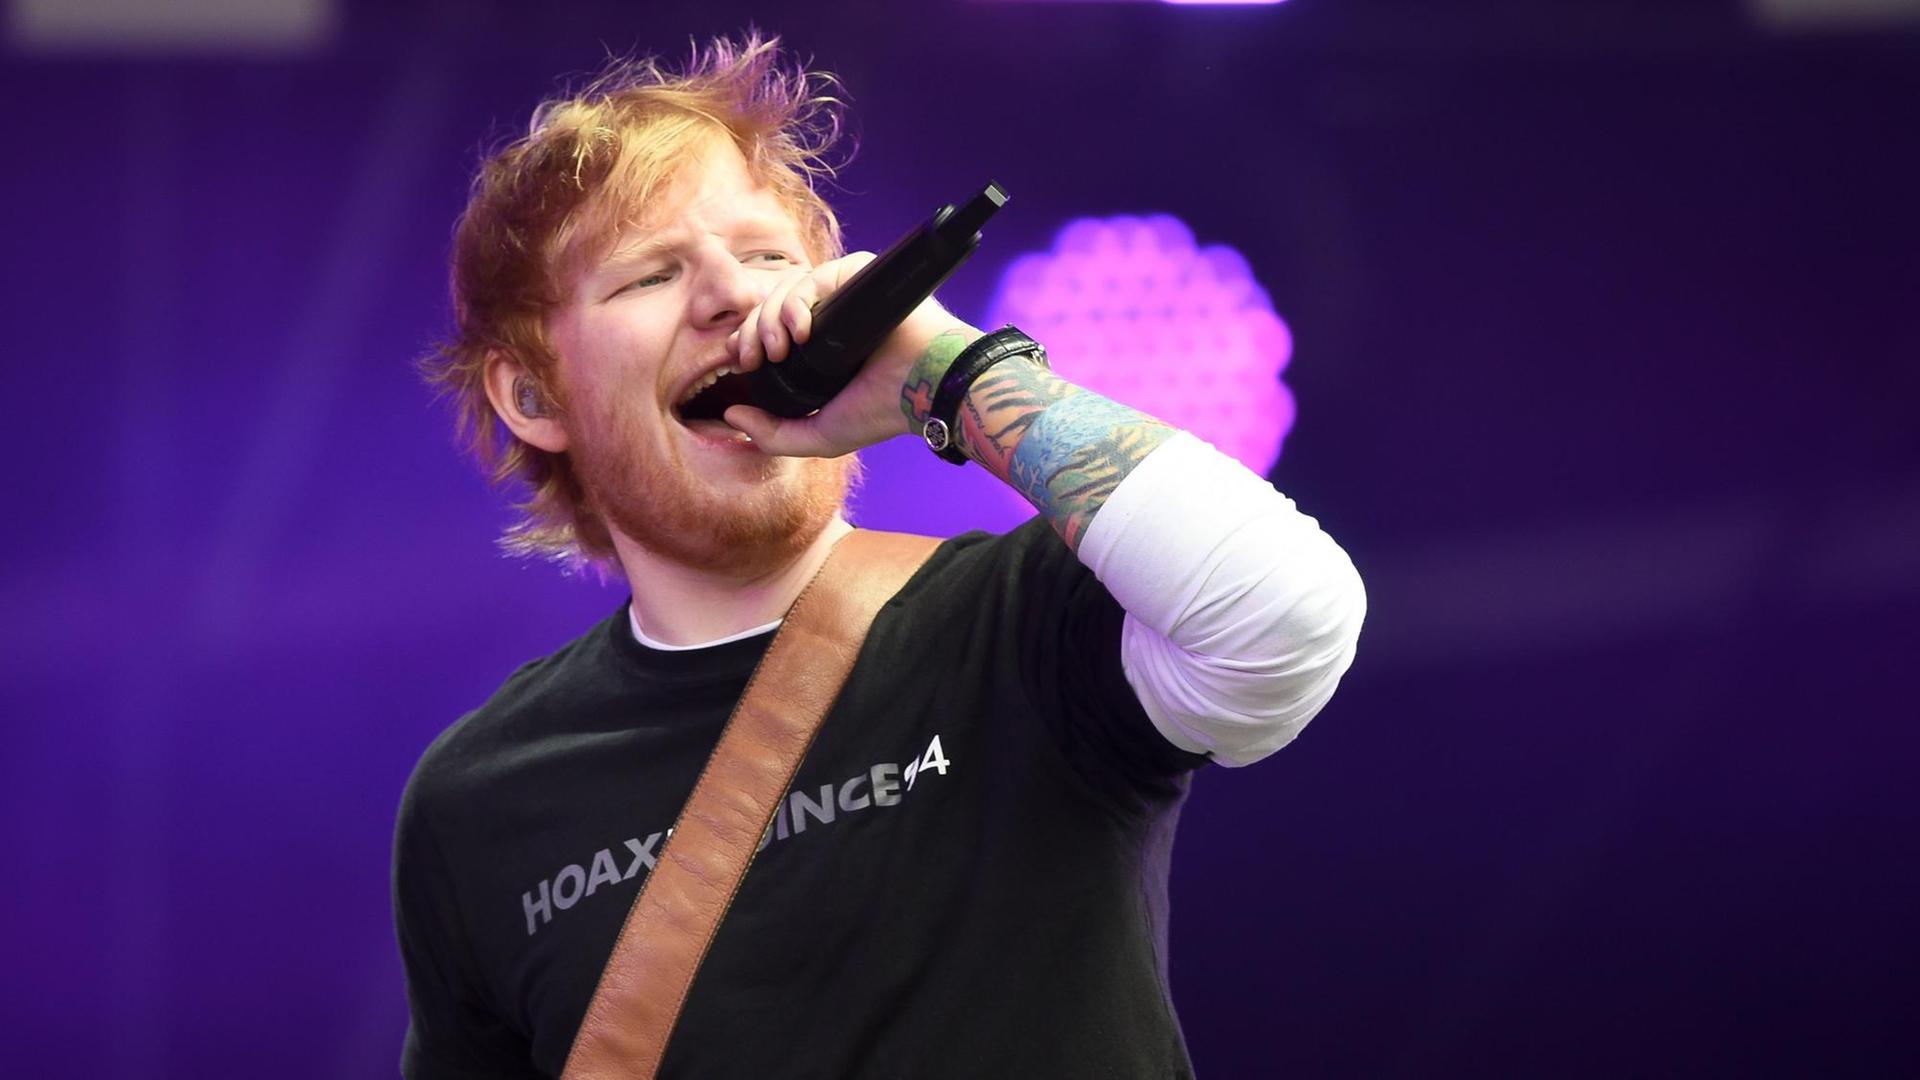 Der Künstler Ed Sheeran hält bei einem Konzert ein Mikrofon in der Hand und singt.